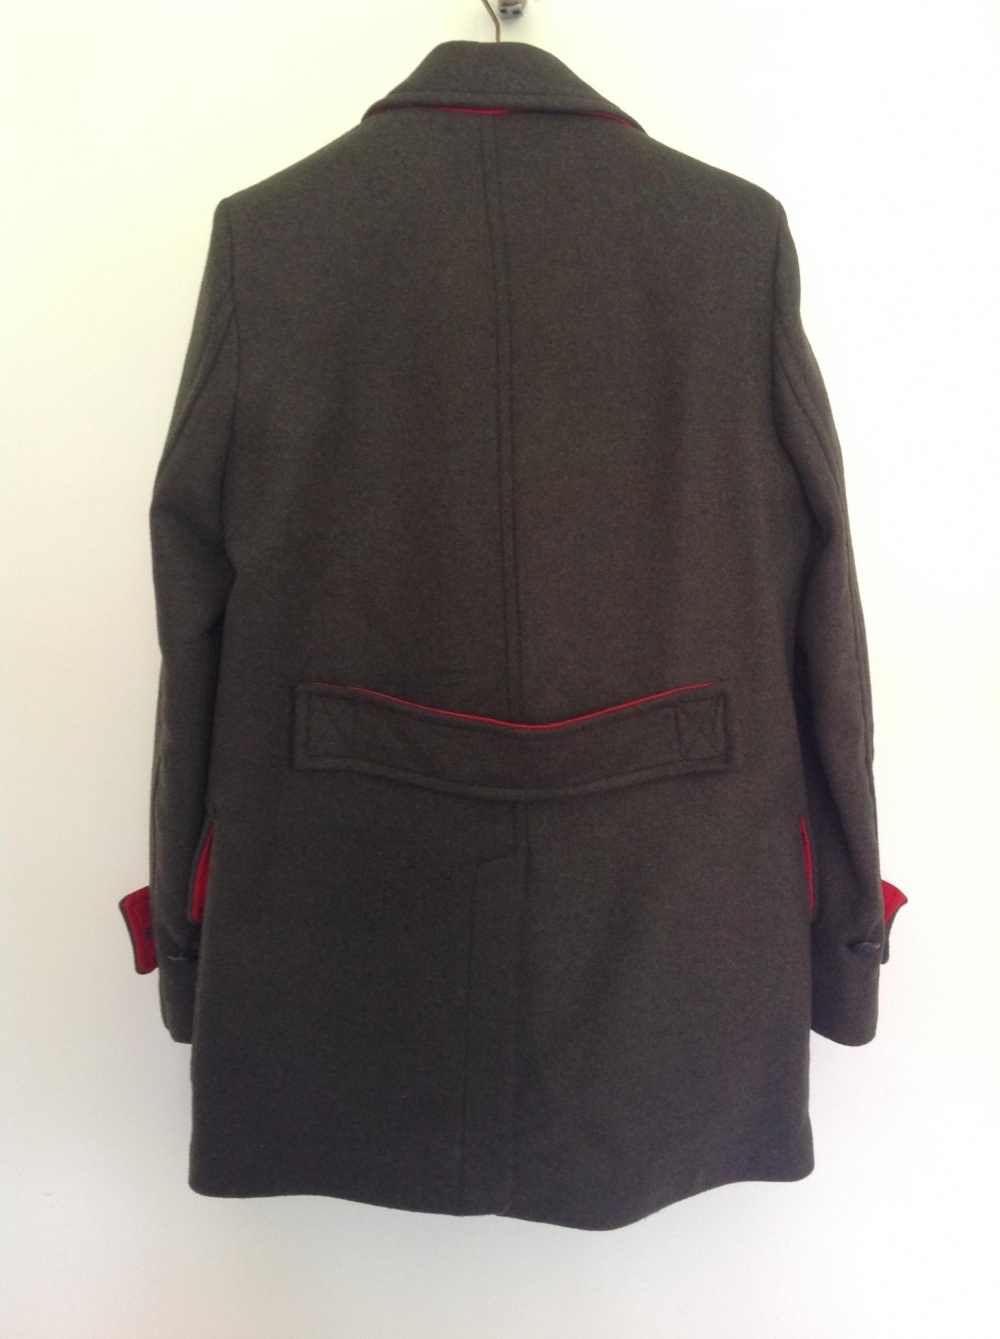 Пальто/ бушлат Zara, размер S, на 44-46-48